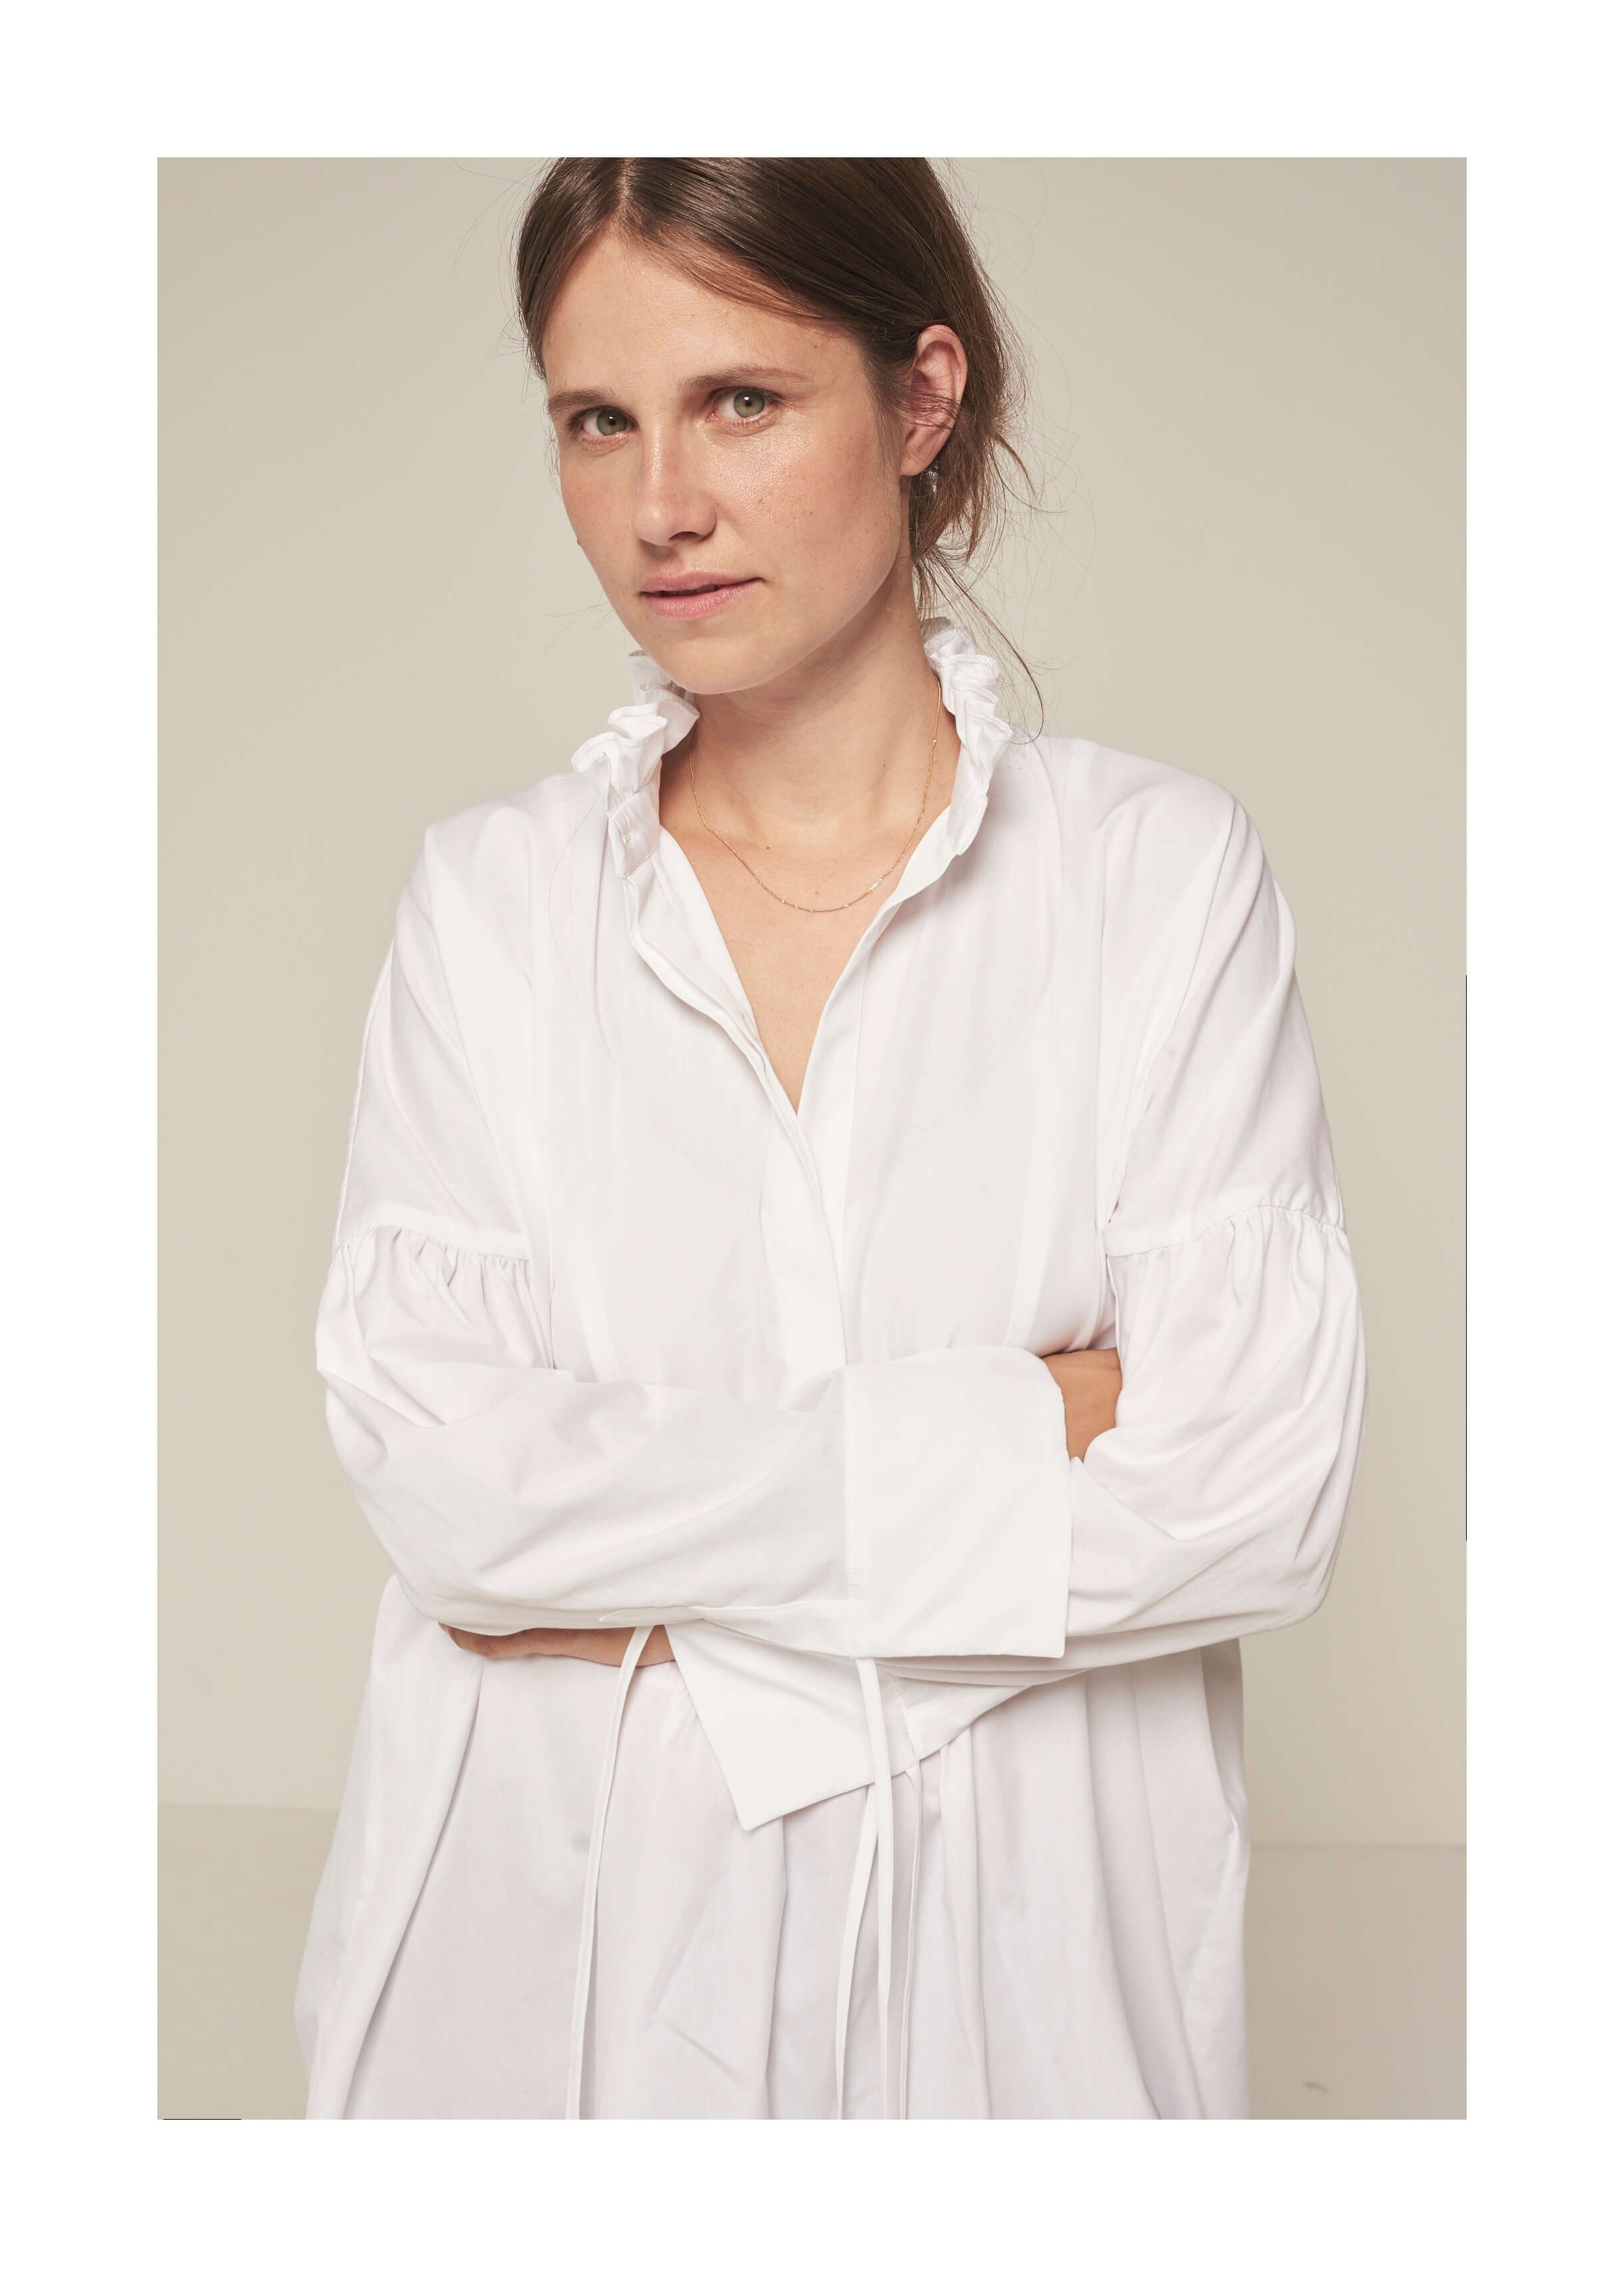 Interview with Danish fashion designer Cecilie Bahnsen